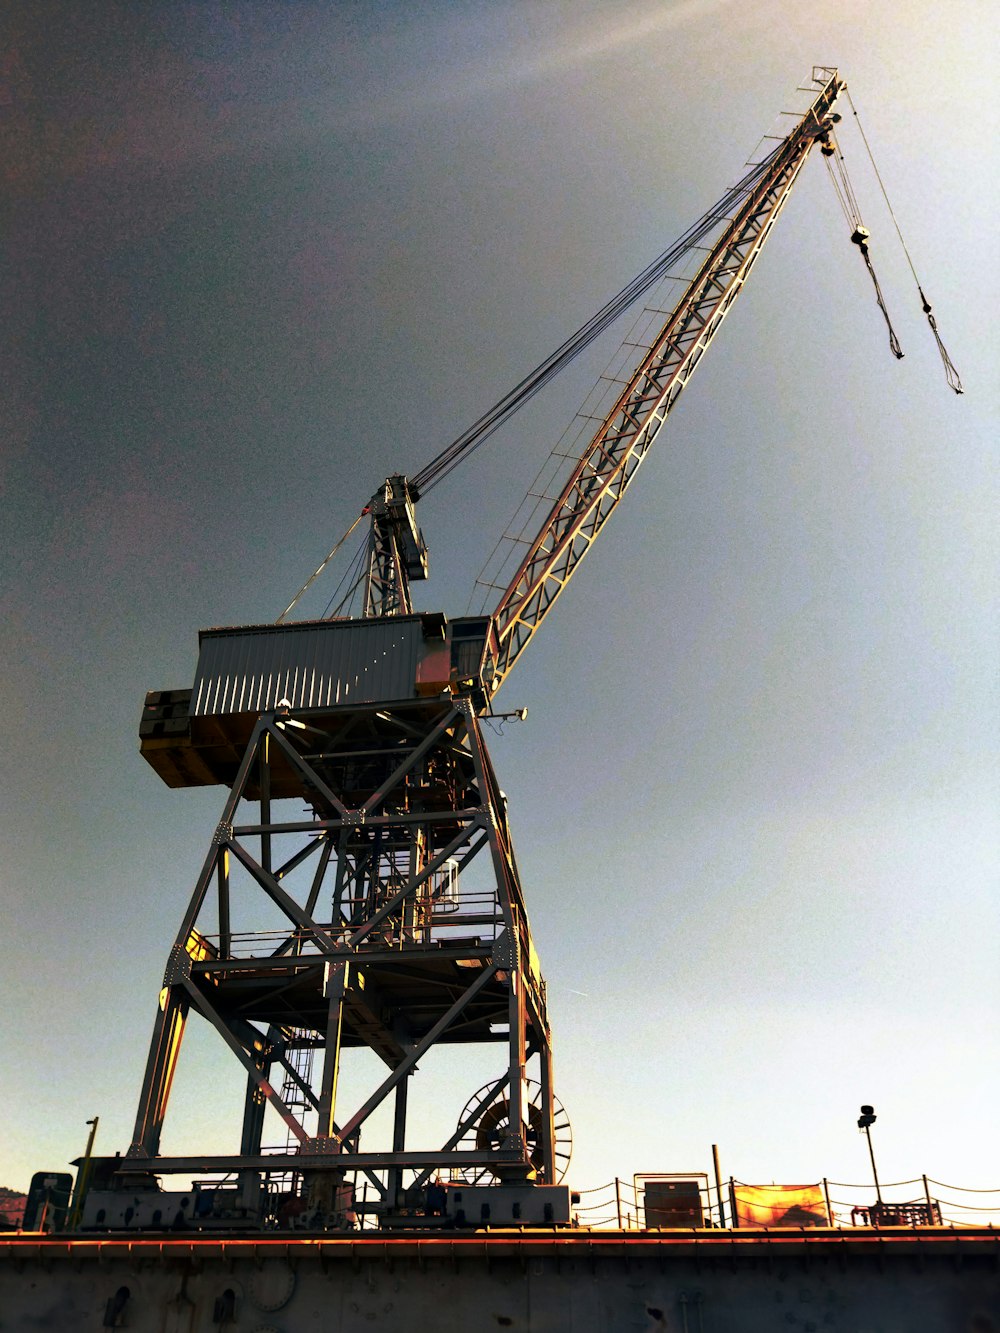 a crane on a construction site